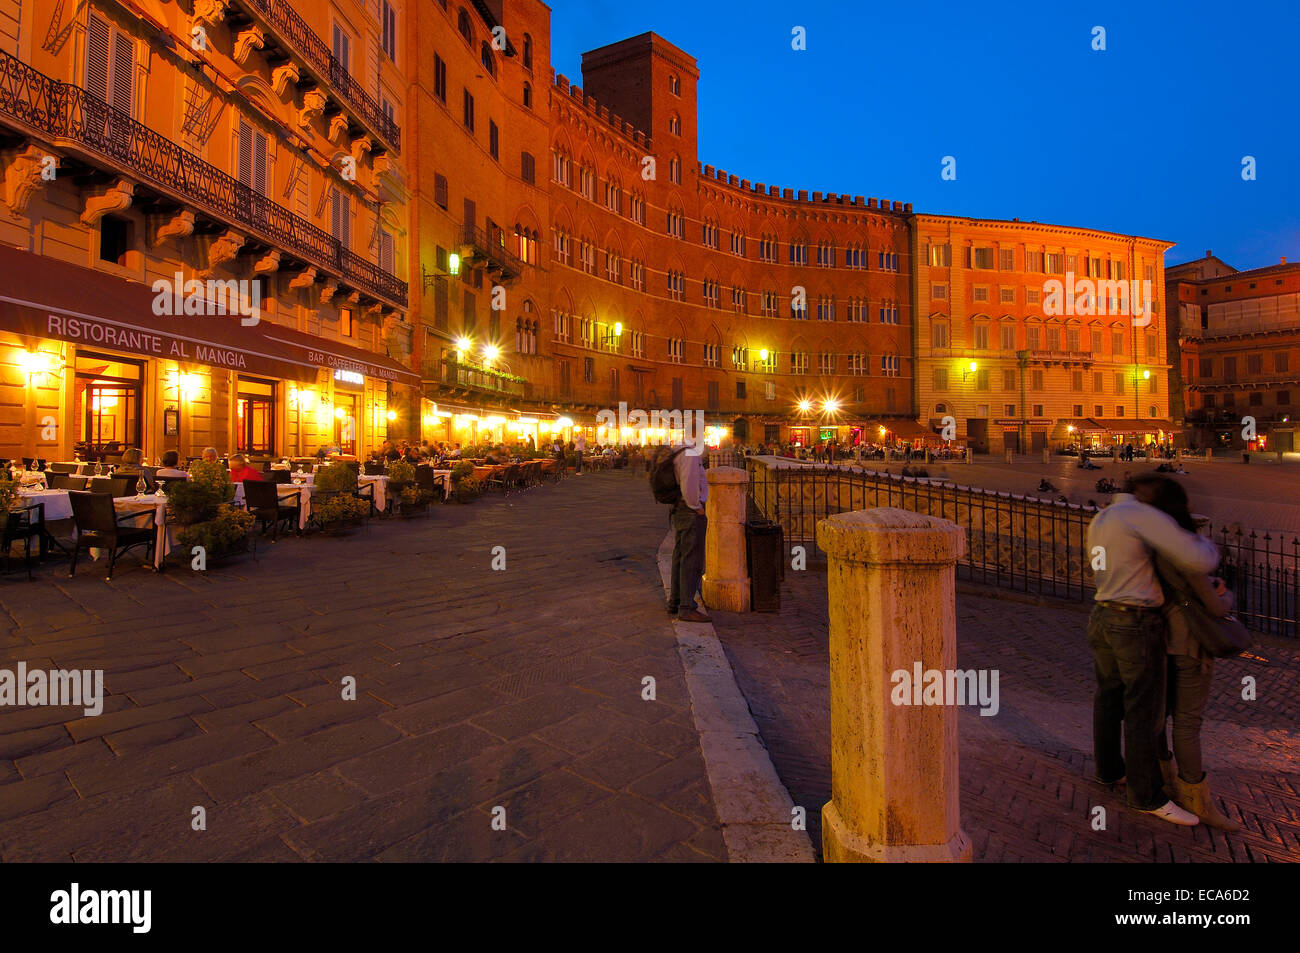 Piazza del campo square at dusk, Siena, Tuscany, Italy, Europe Stock Photo